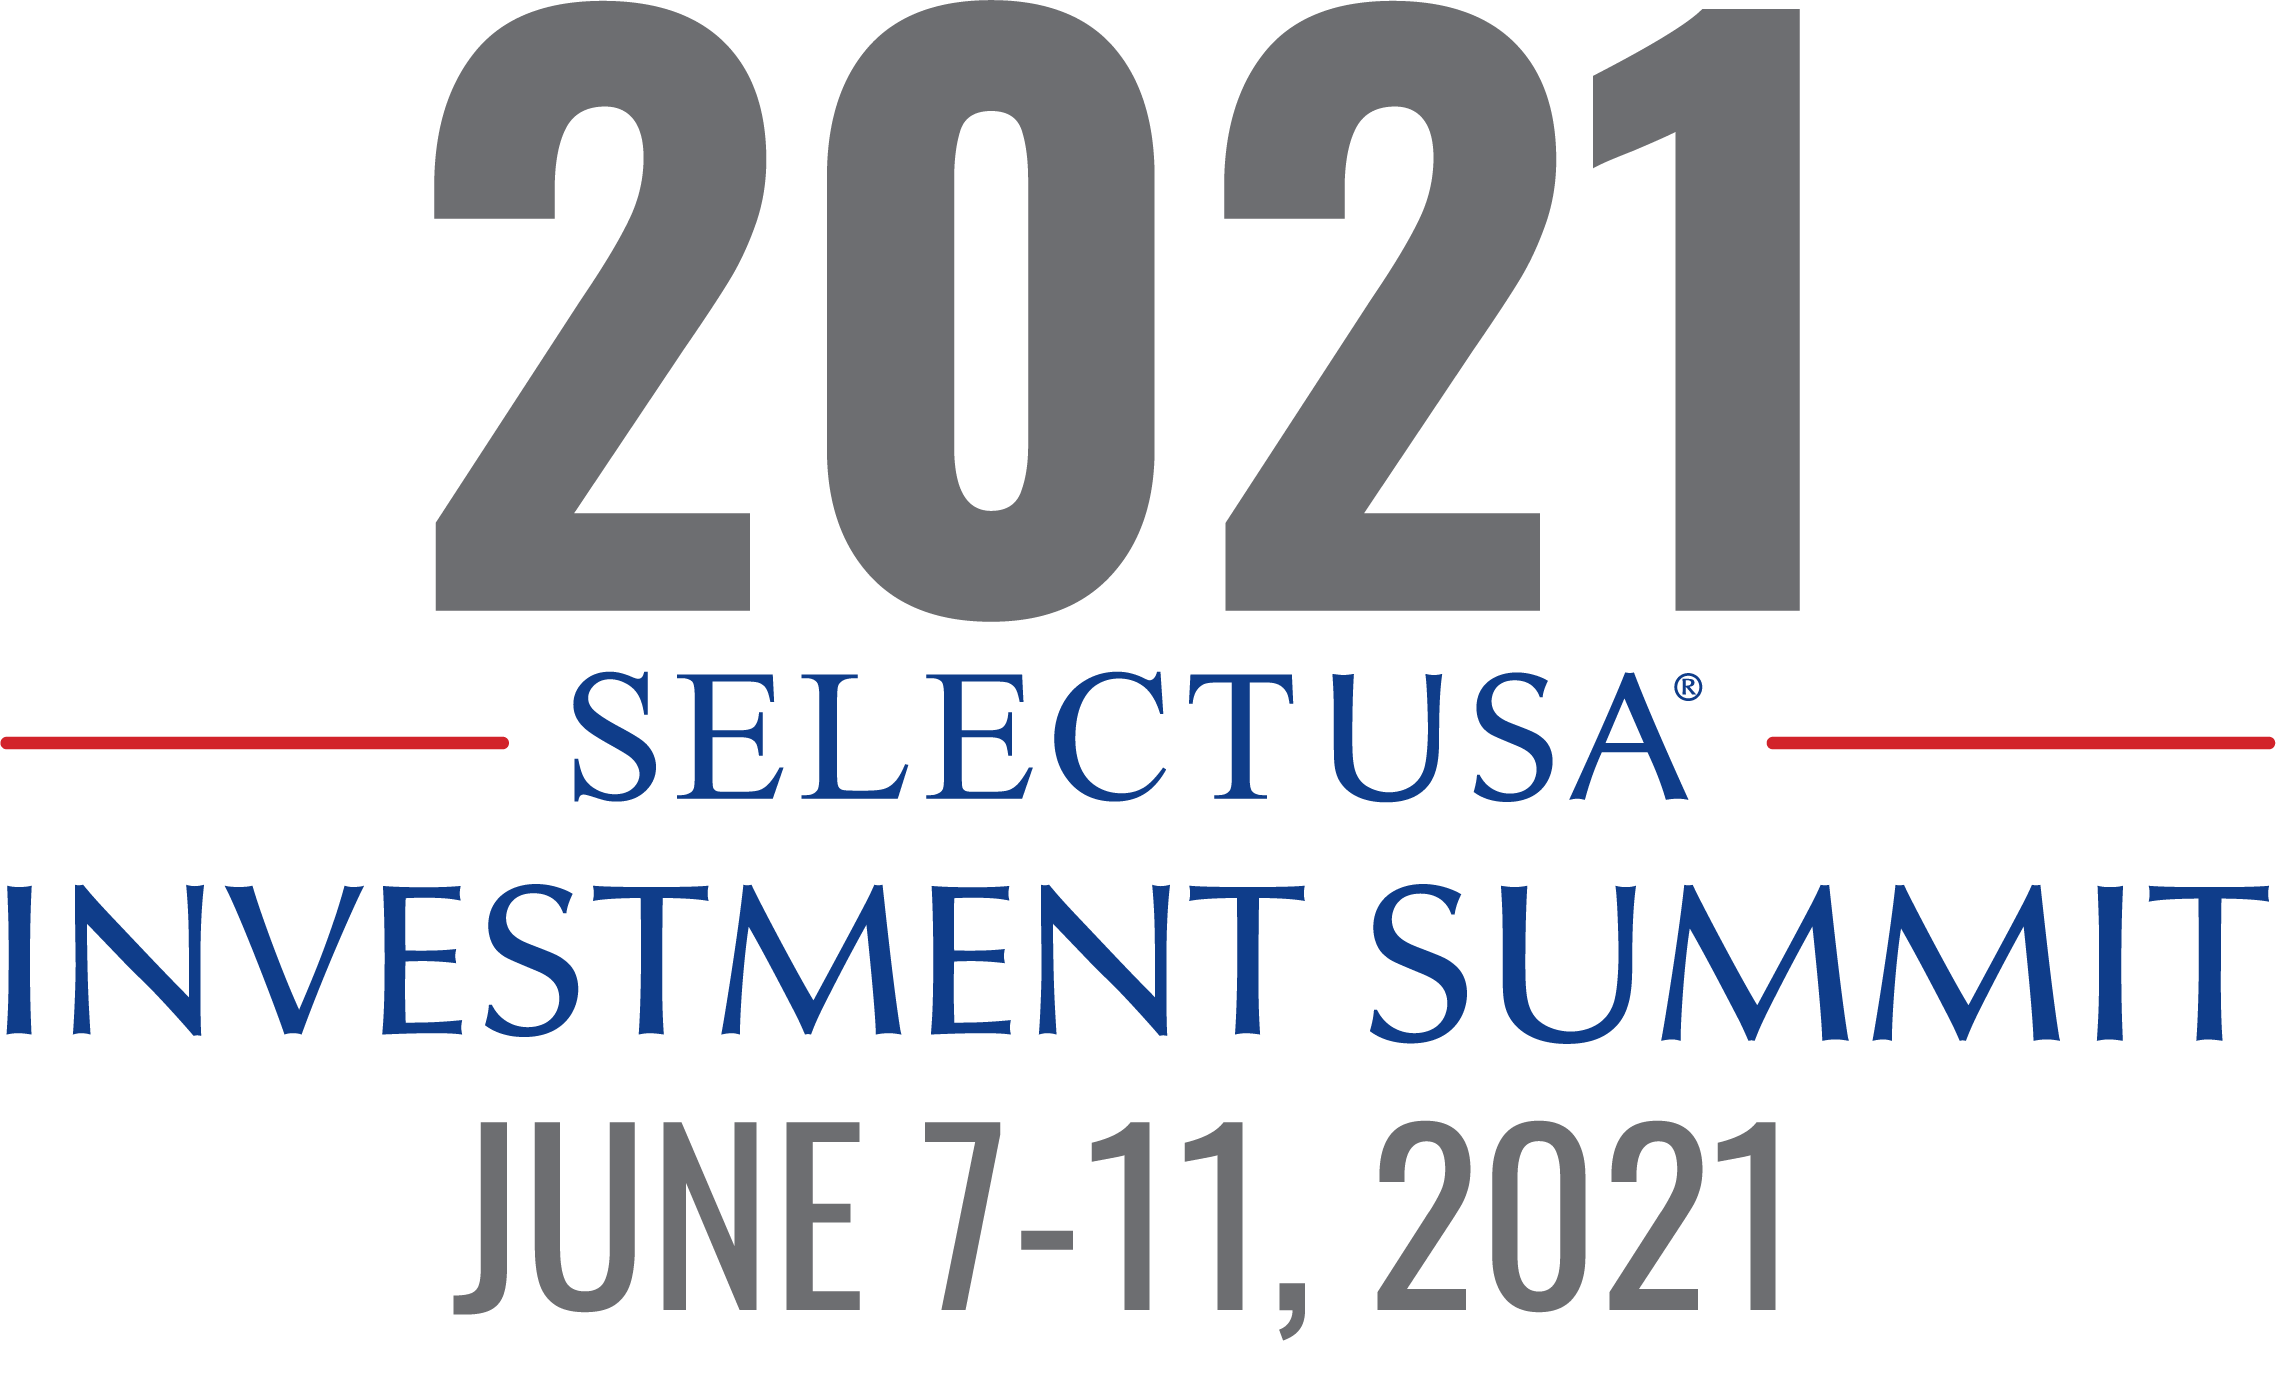 SelectUSA Investment Summit (711 junio) Chemspain